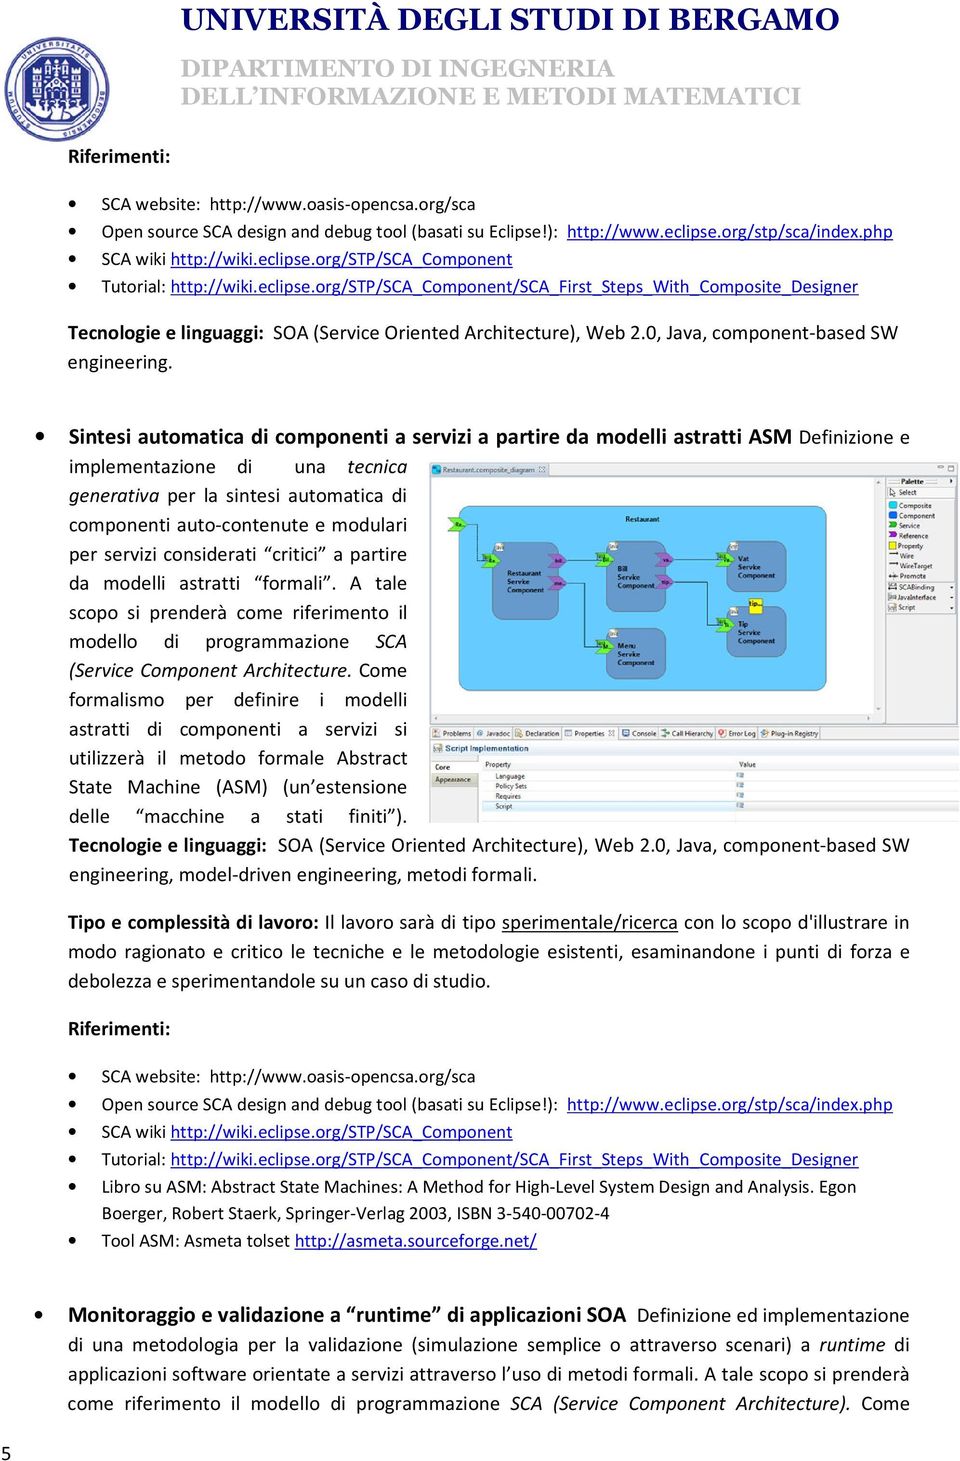 Sintesi automatica di componenti a servizi a partire da modelli astratti ASM Definizione e implementazione di una tecnica generativa per la sintesi automatica di componenti auto-contenute e modulari